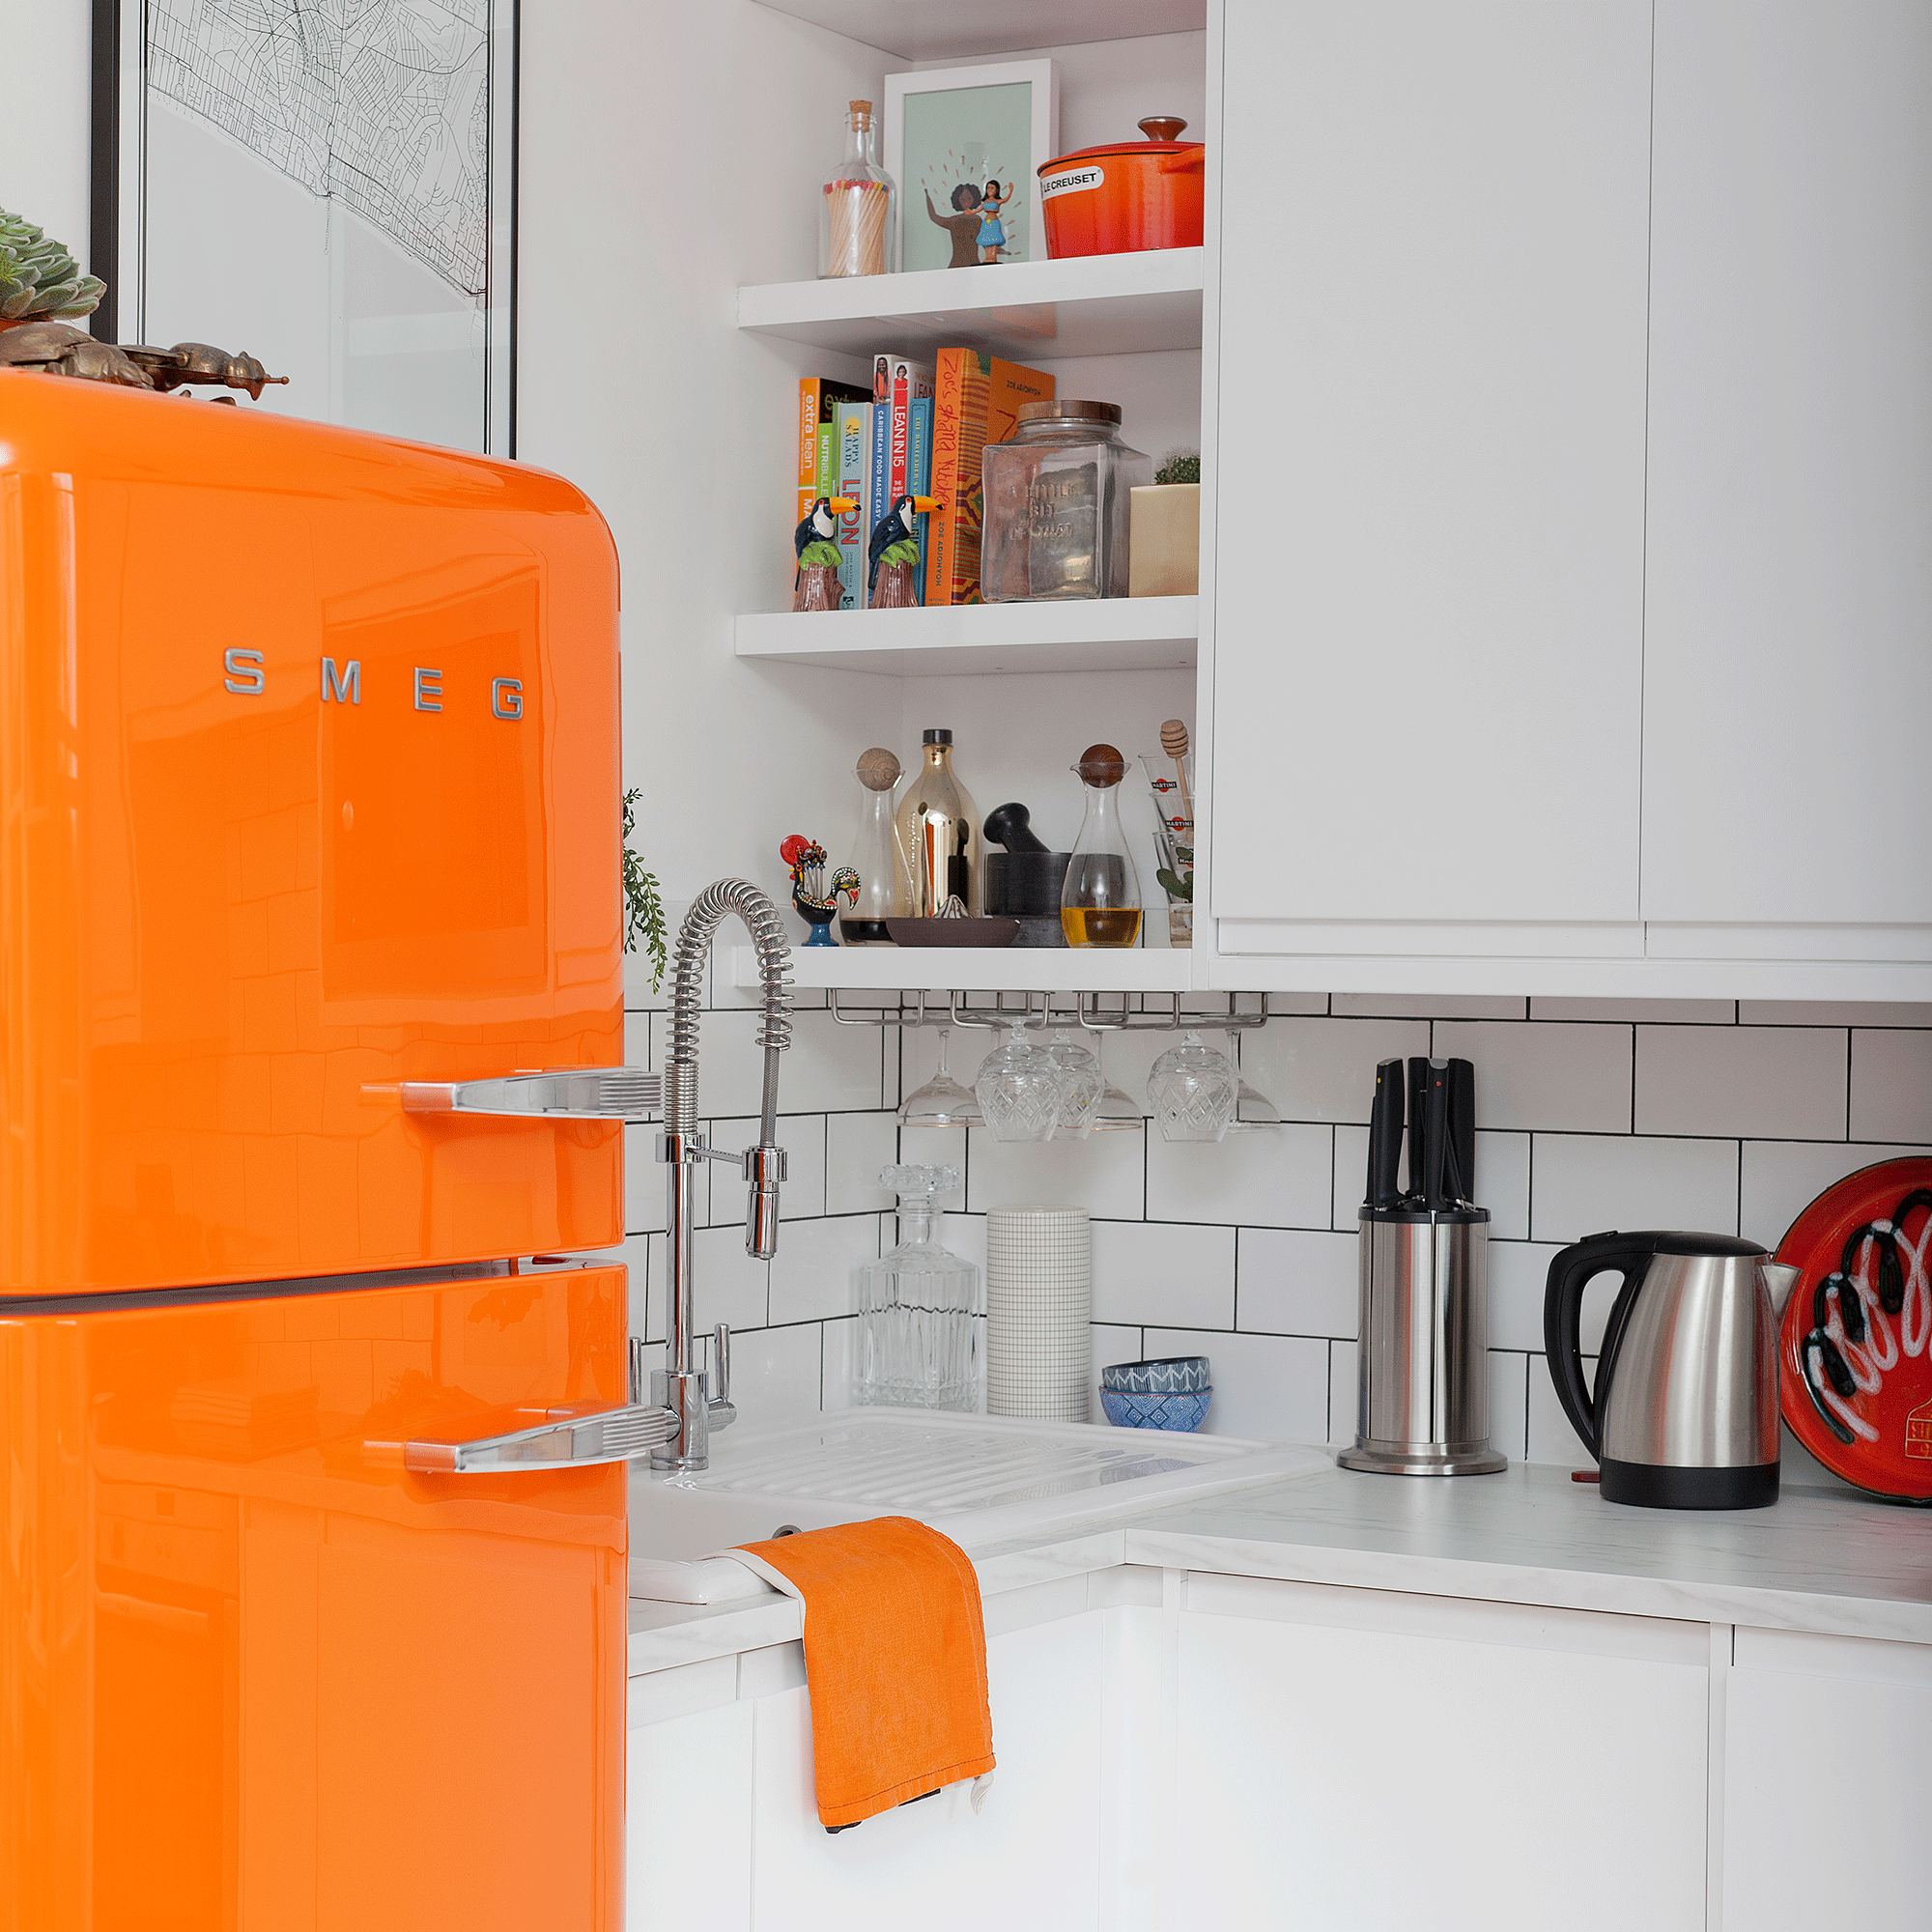 Orange fridge in white kitchen with tiles